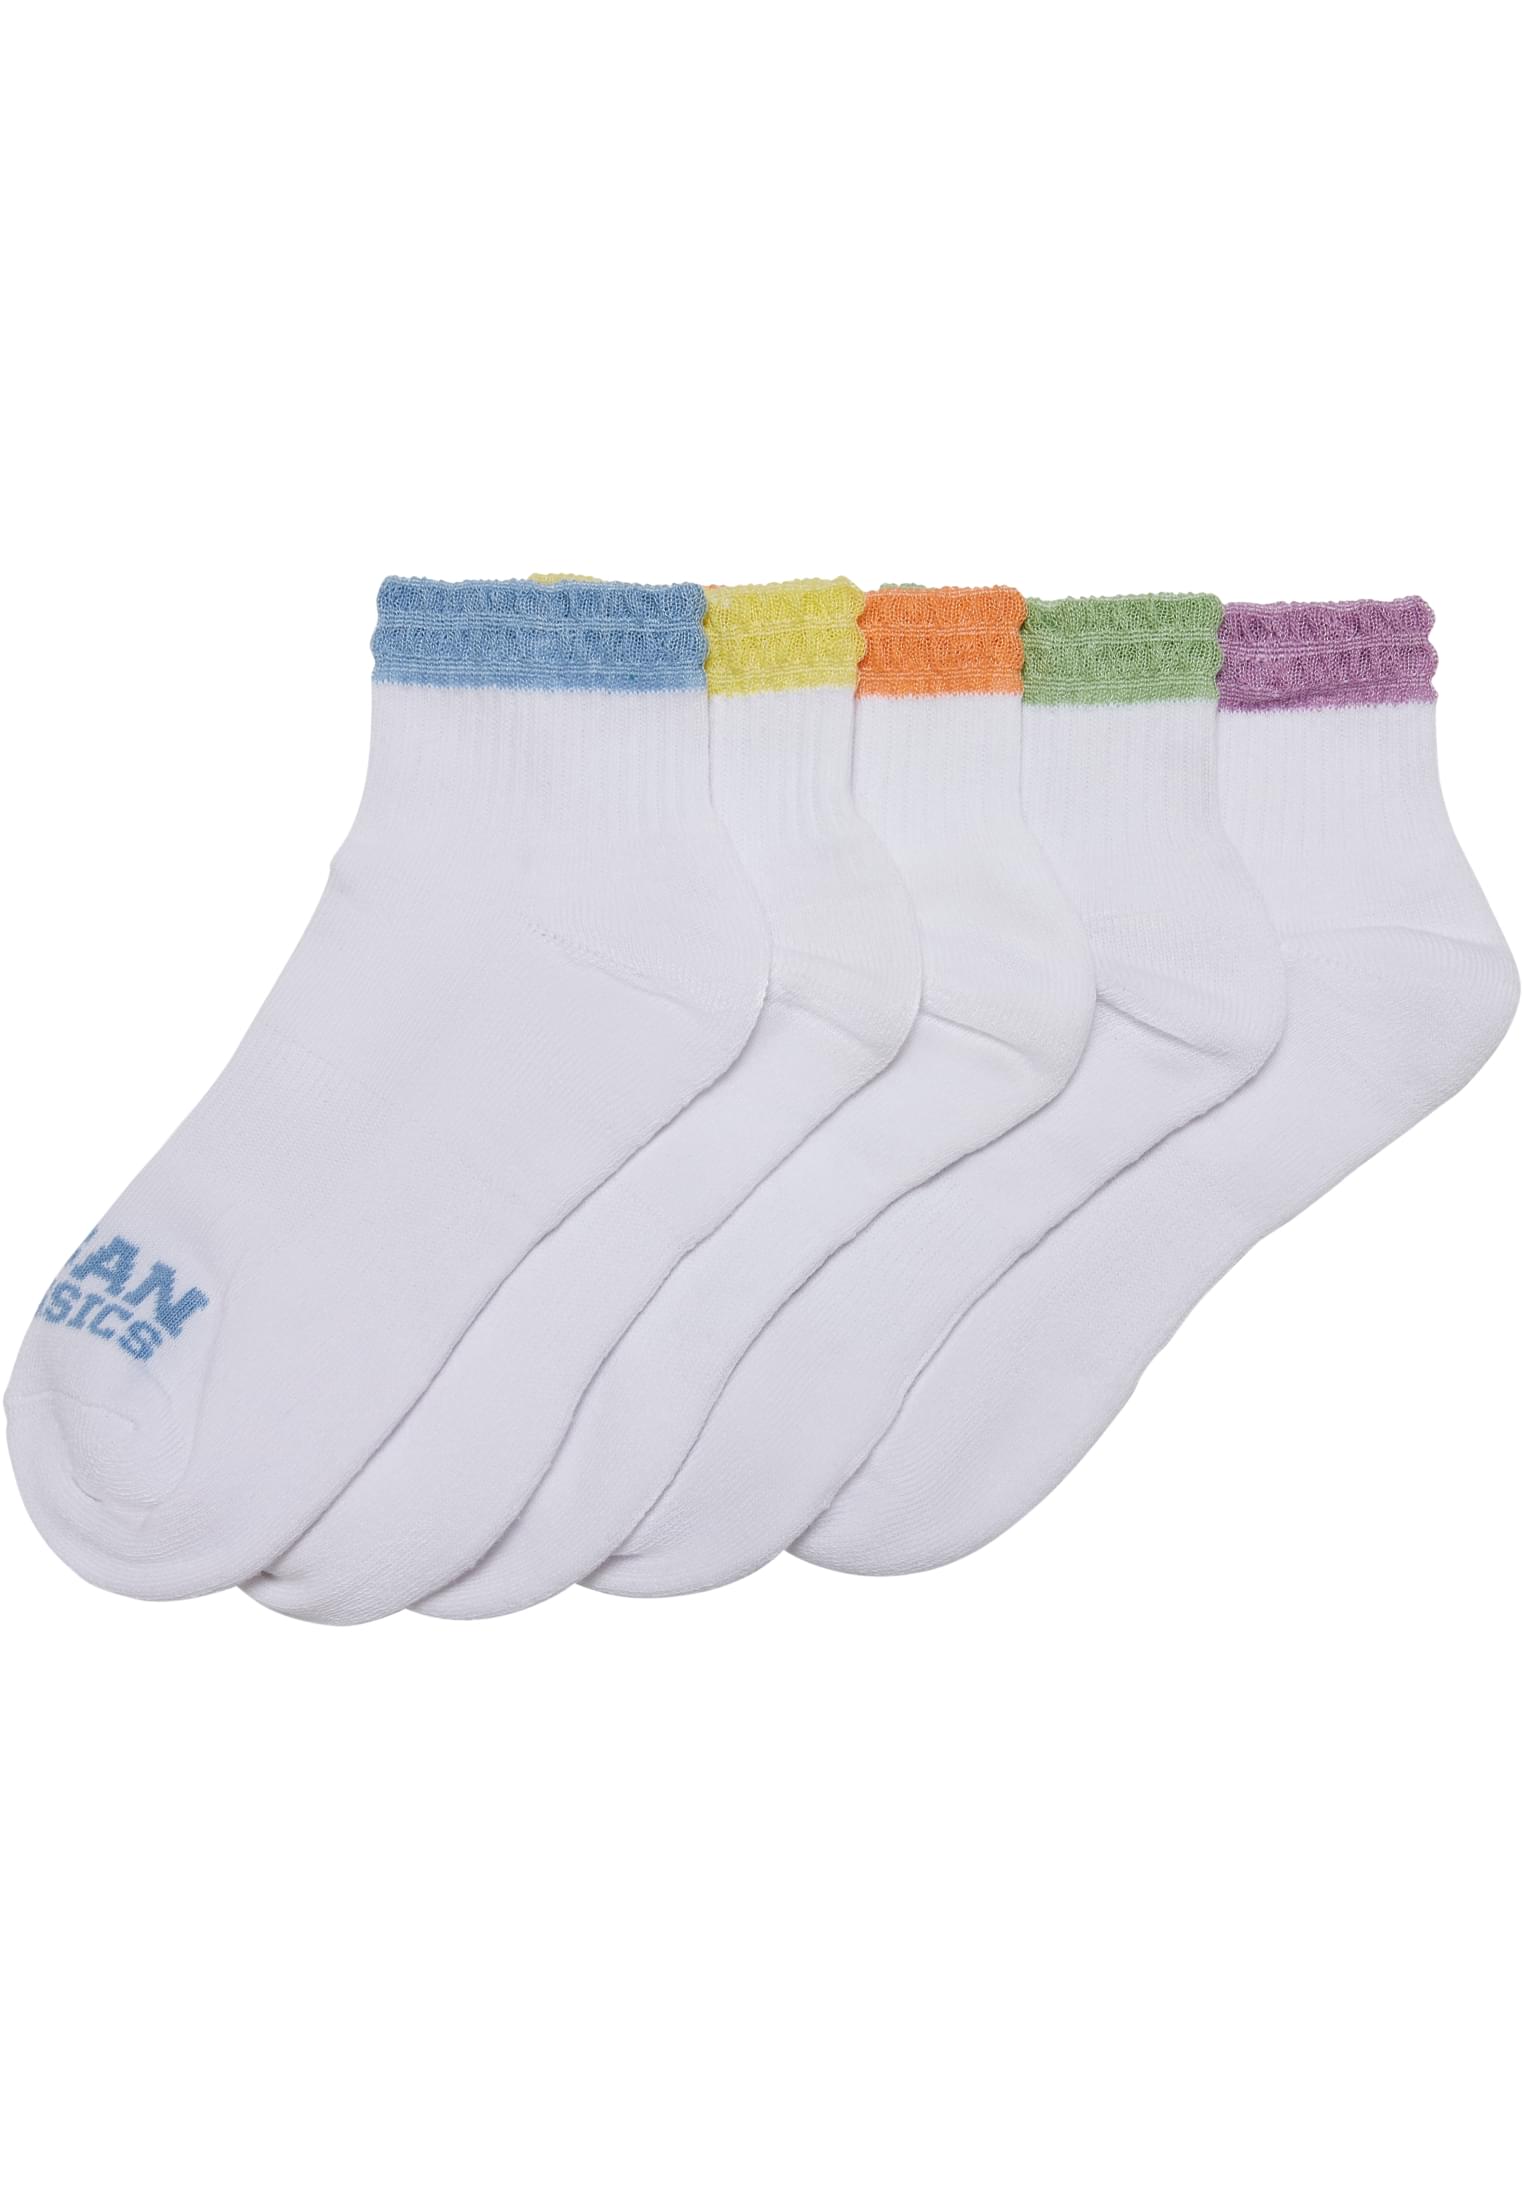 Levně Barevné krajkové manžetové ponožky 5-balení letní barvy